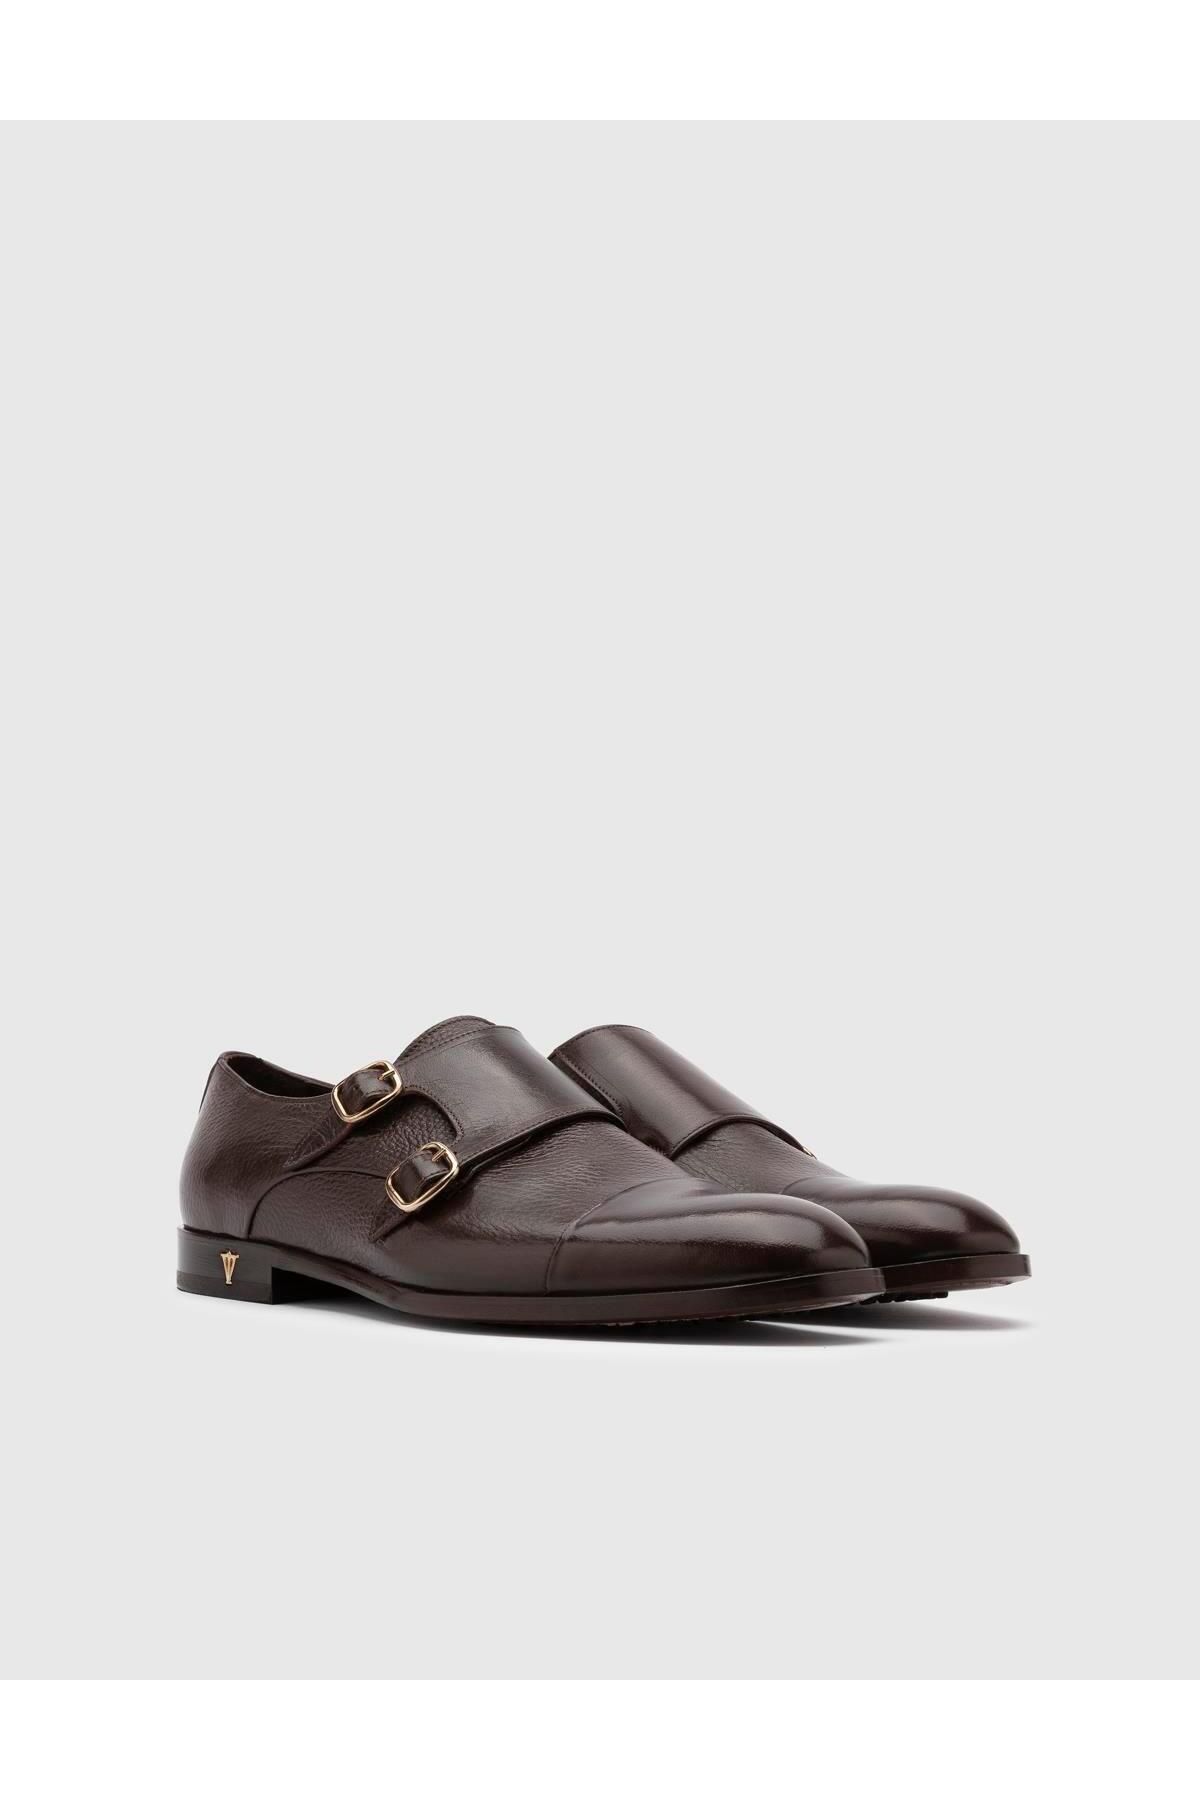 İlvi Mauri Hakiki Bufalo Geyik Deri Erkek Kahverengi Klasik Ayakkabı